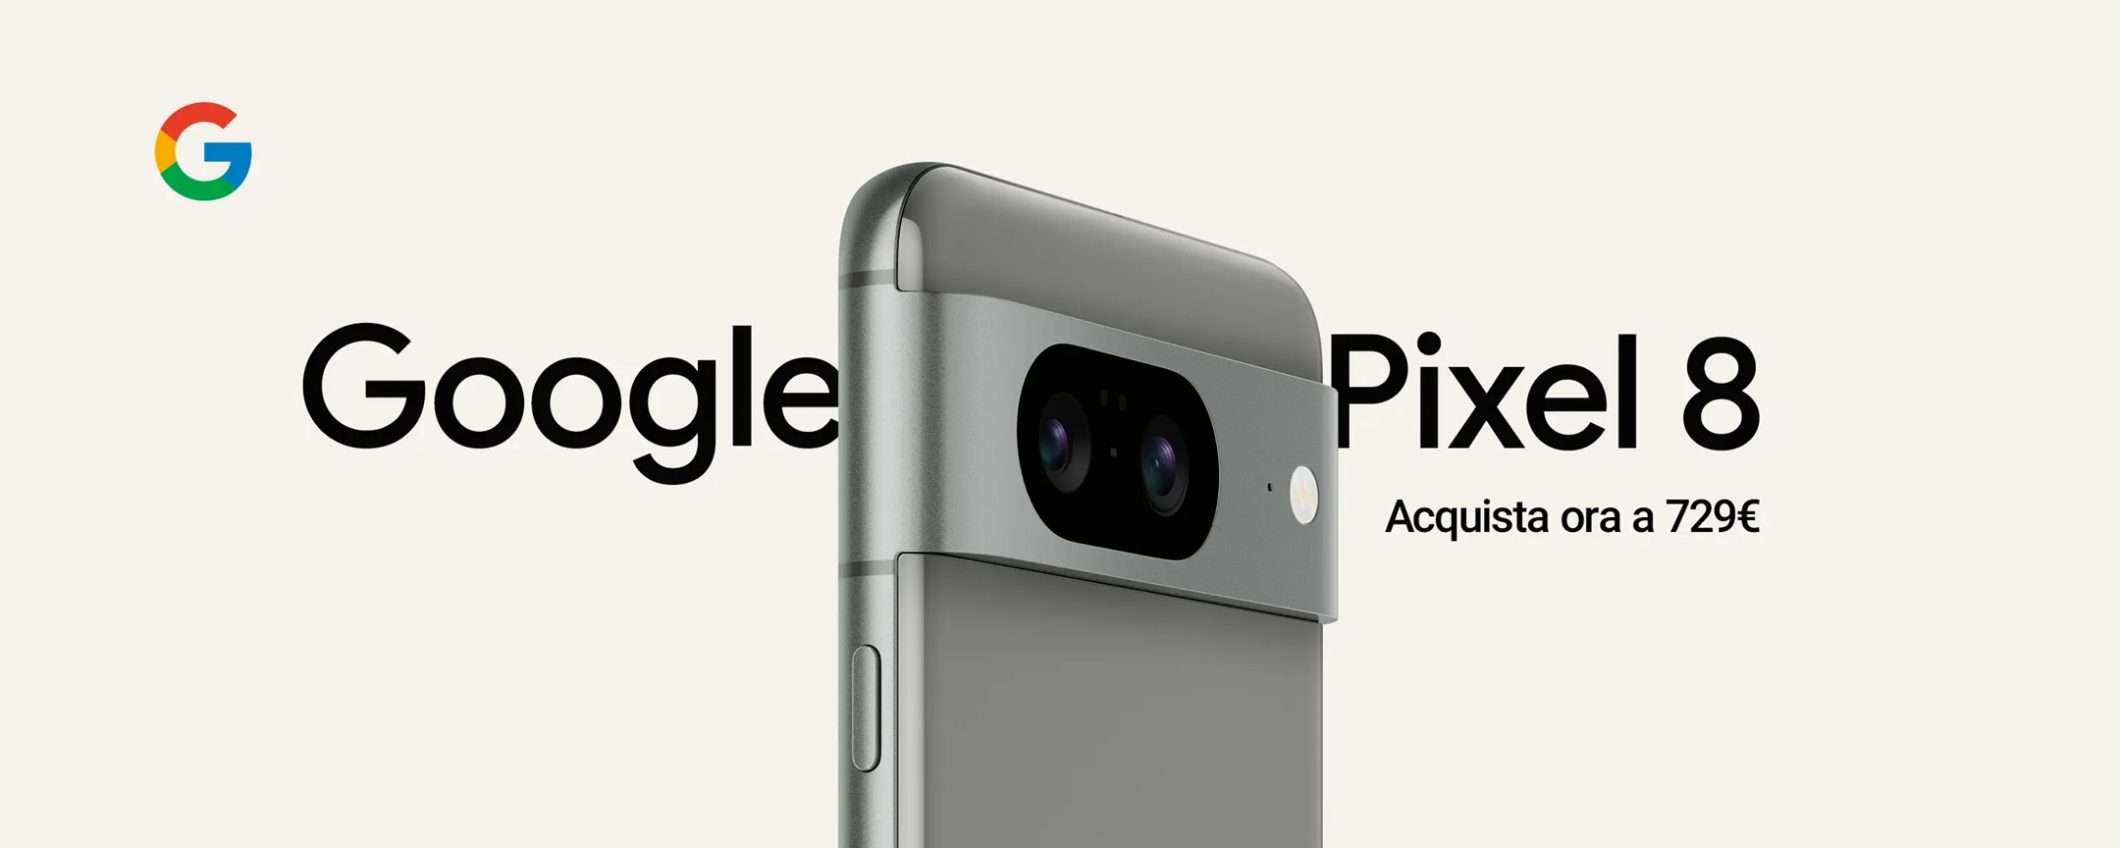 Google Pixel 8 in offerta a 729€ per il 